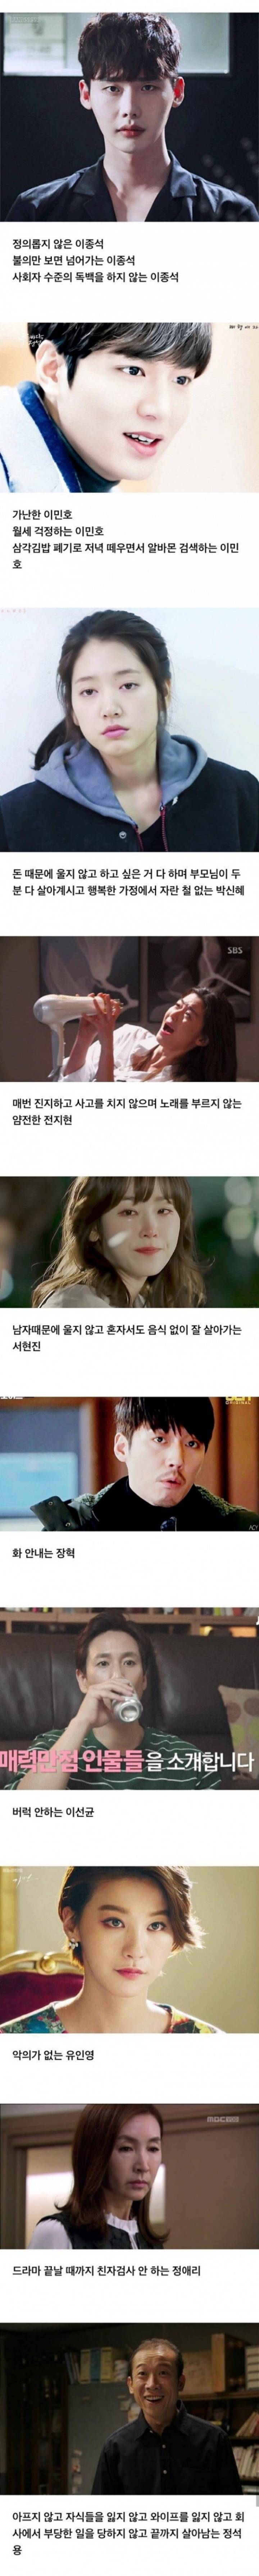 죽기전까지 한국드라마에서 볼 수 없는 연기